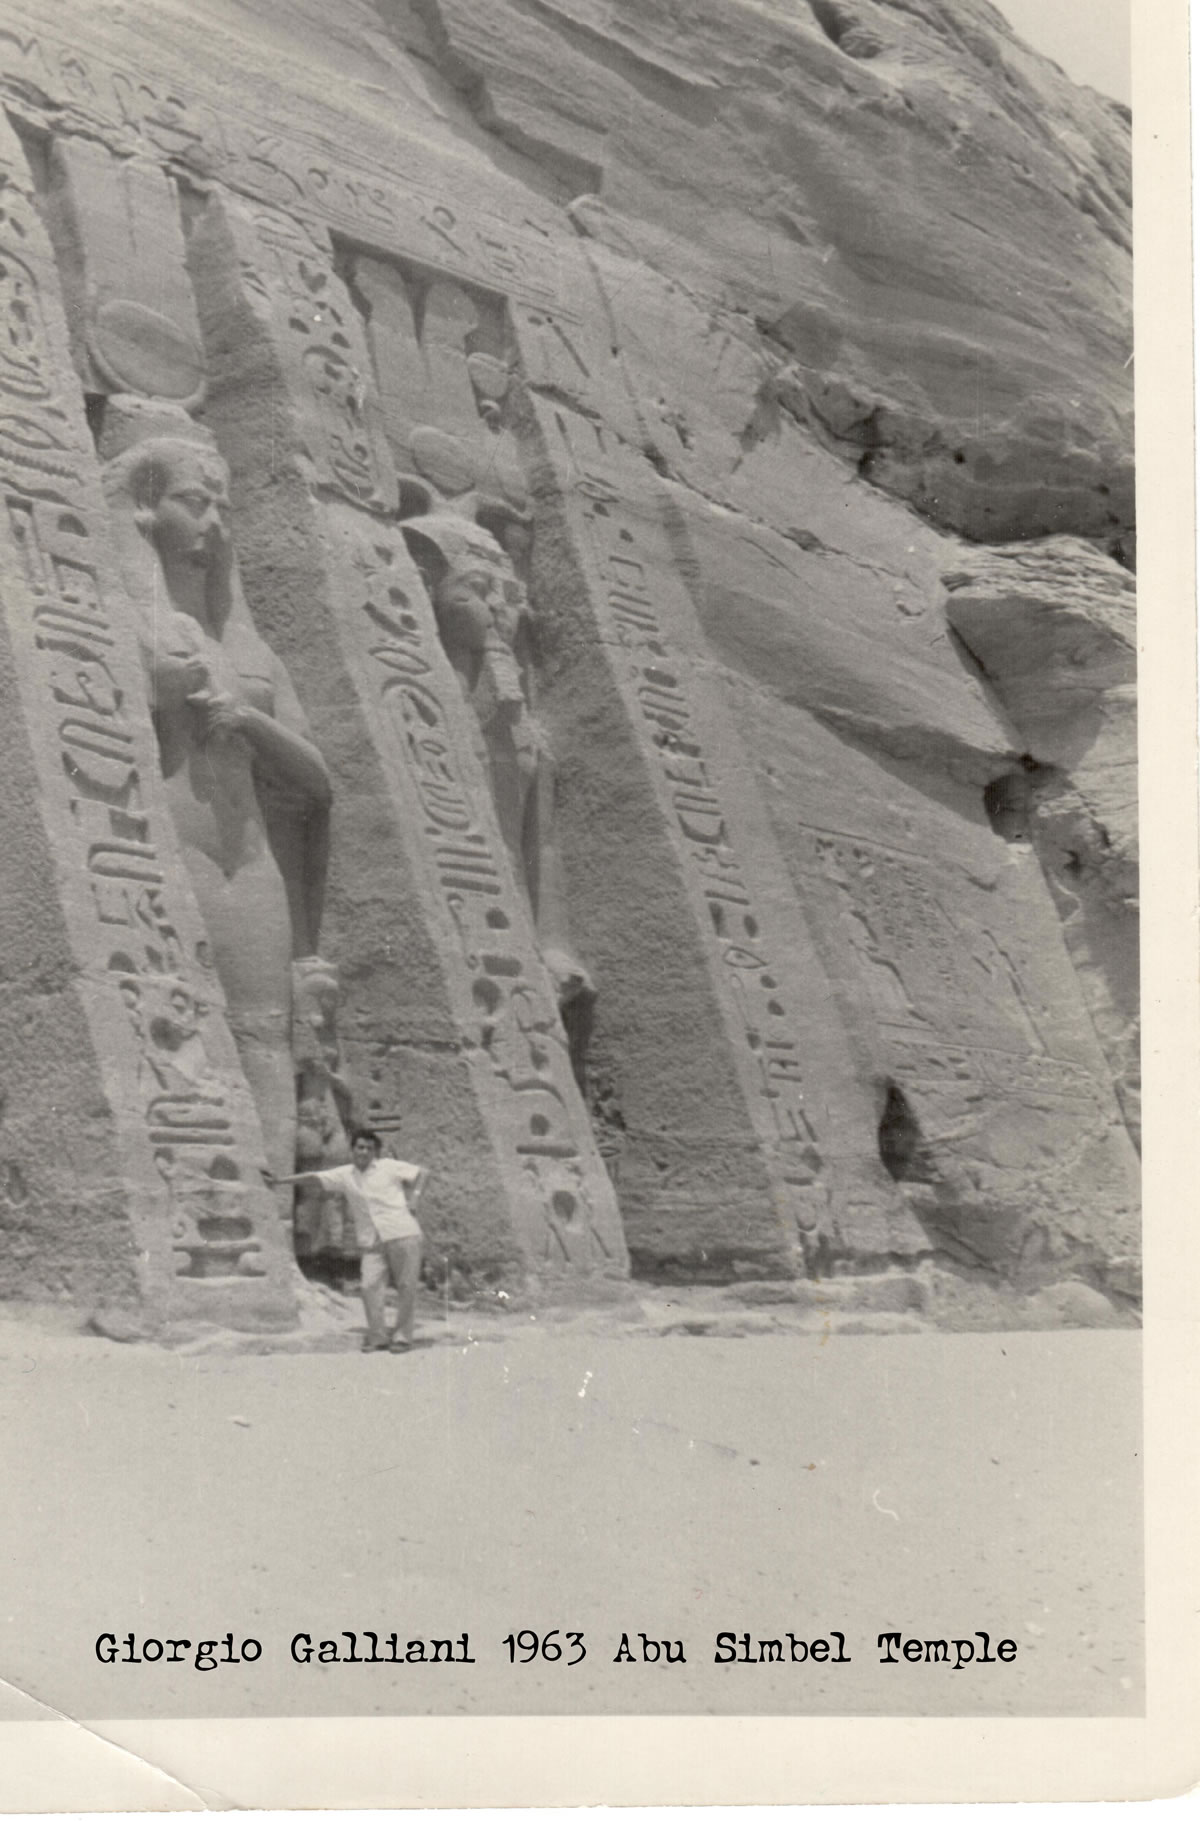 Giorgio Galliani 1963 Abu Simbel Temple